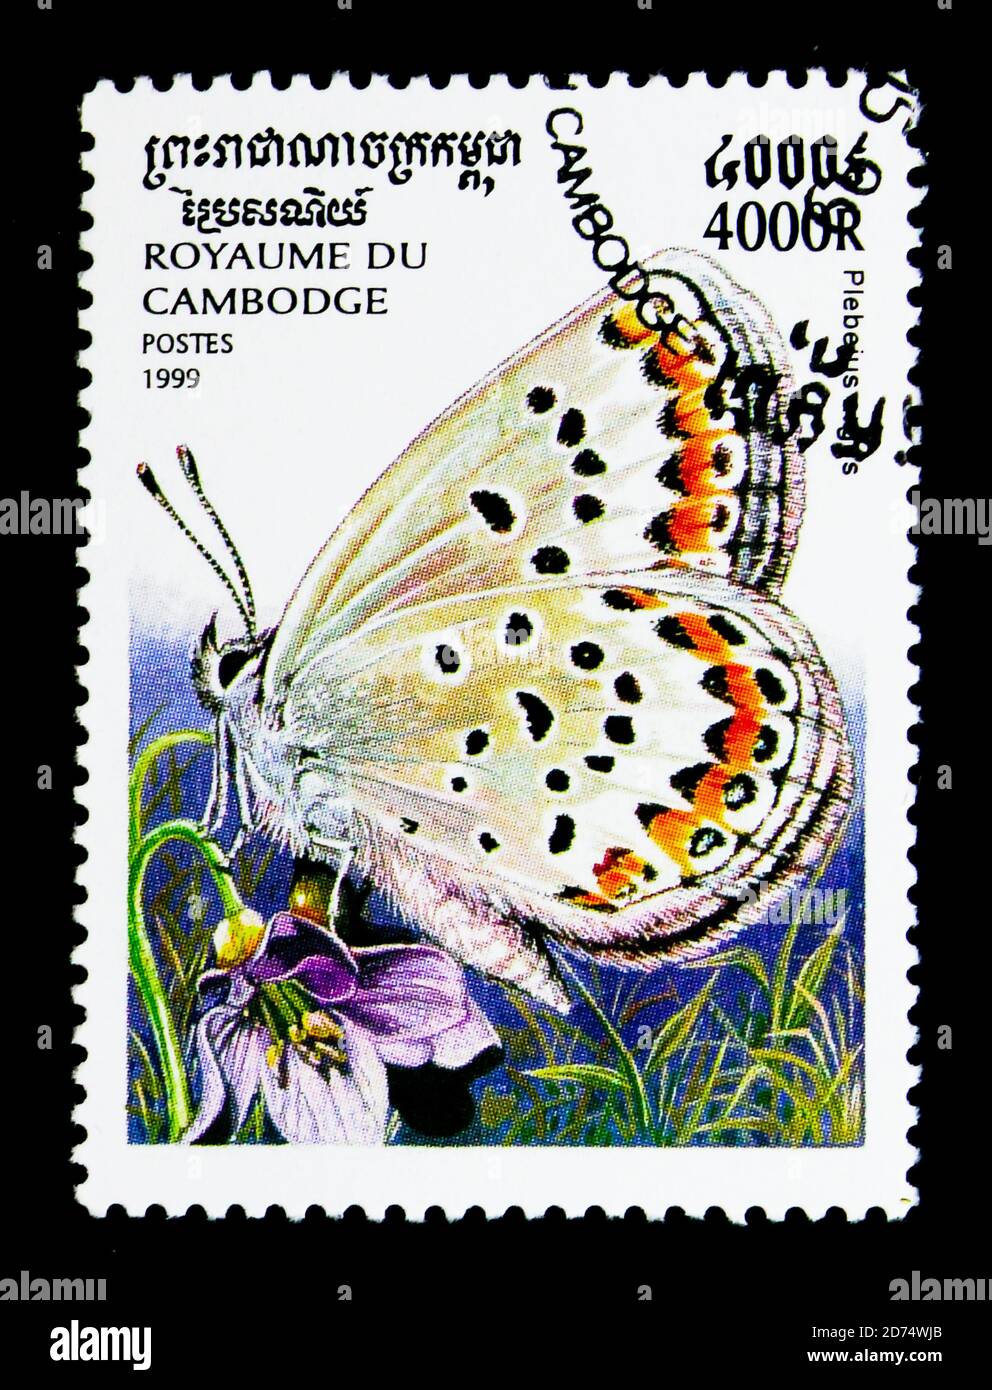 MOSCOU, RUSSIE - 24 NOVEMBRE 2017 : un timbre imprimé au Cambodge montre du bleu à clous d'argent (Plebeius argus), une série de papillons, vers 1999 Banque D'Images